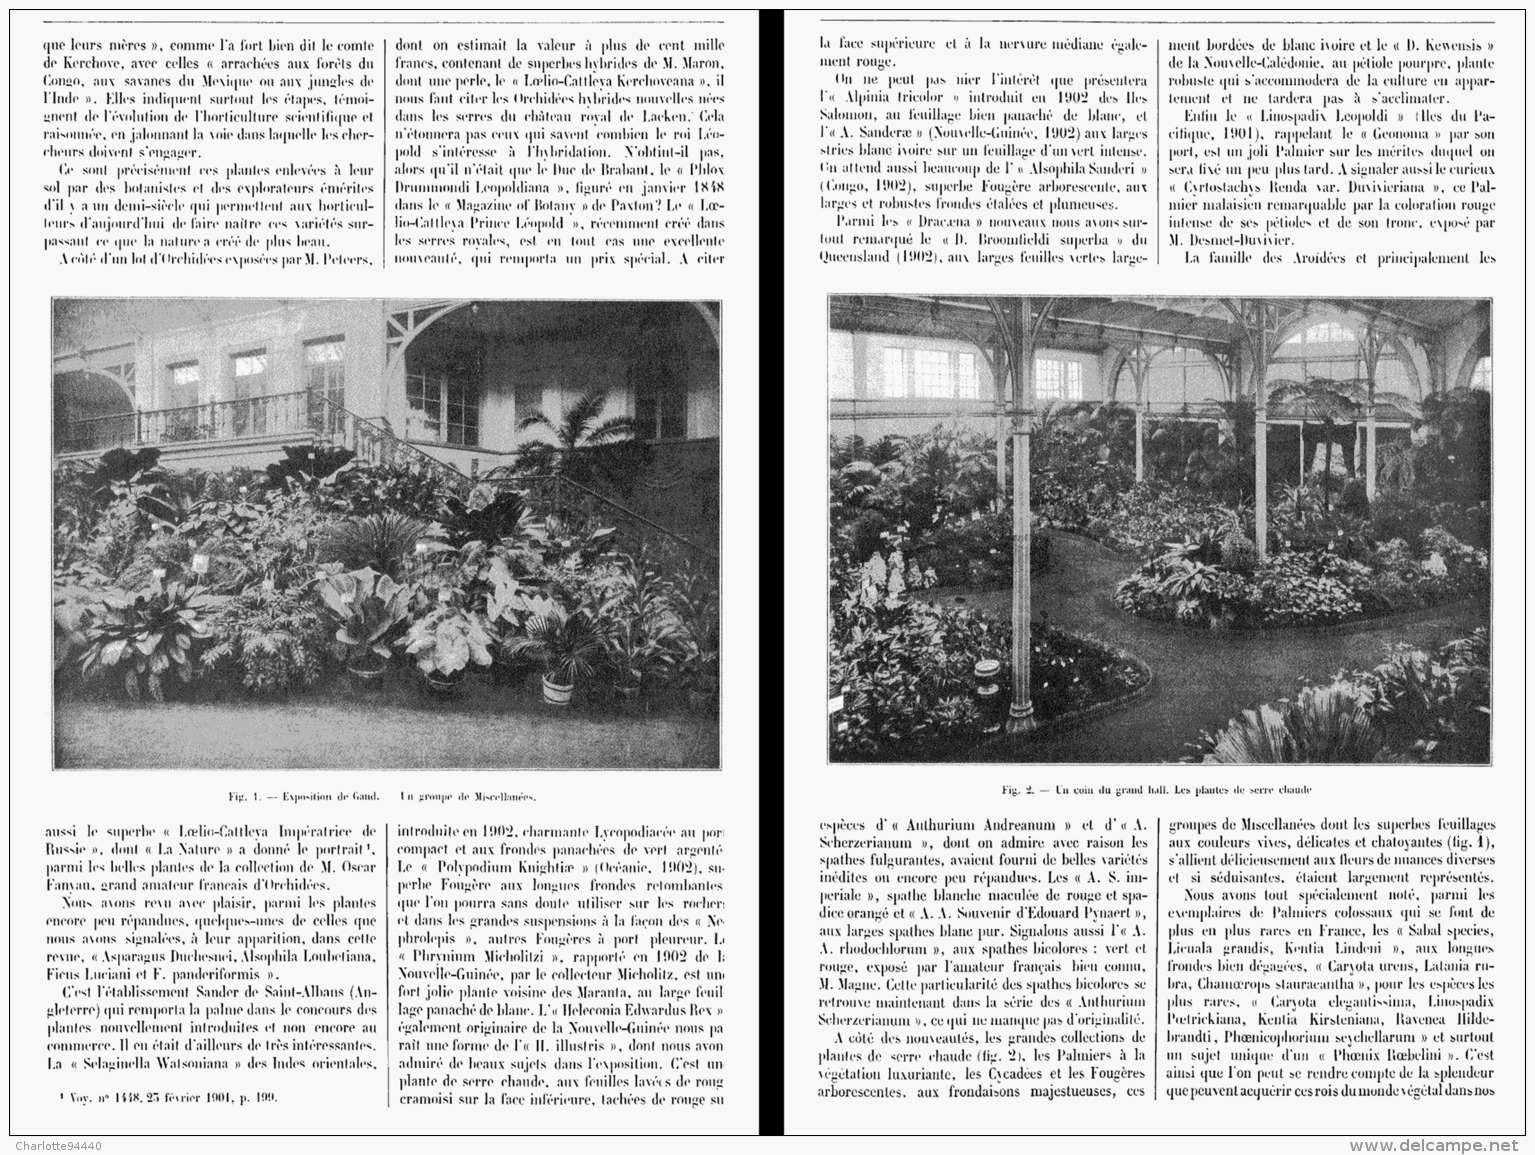 LES PLANTES NOUVELLES Aux FLORALIES GANTOISES DE   1903 - Belgium